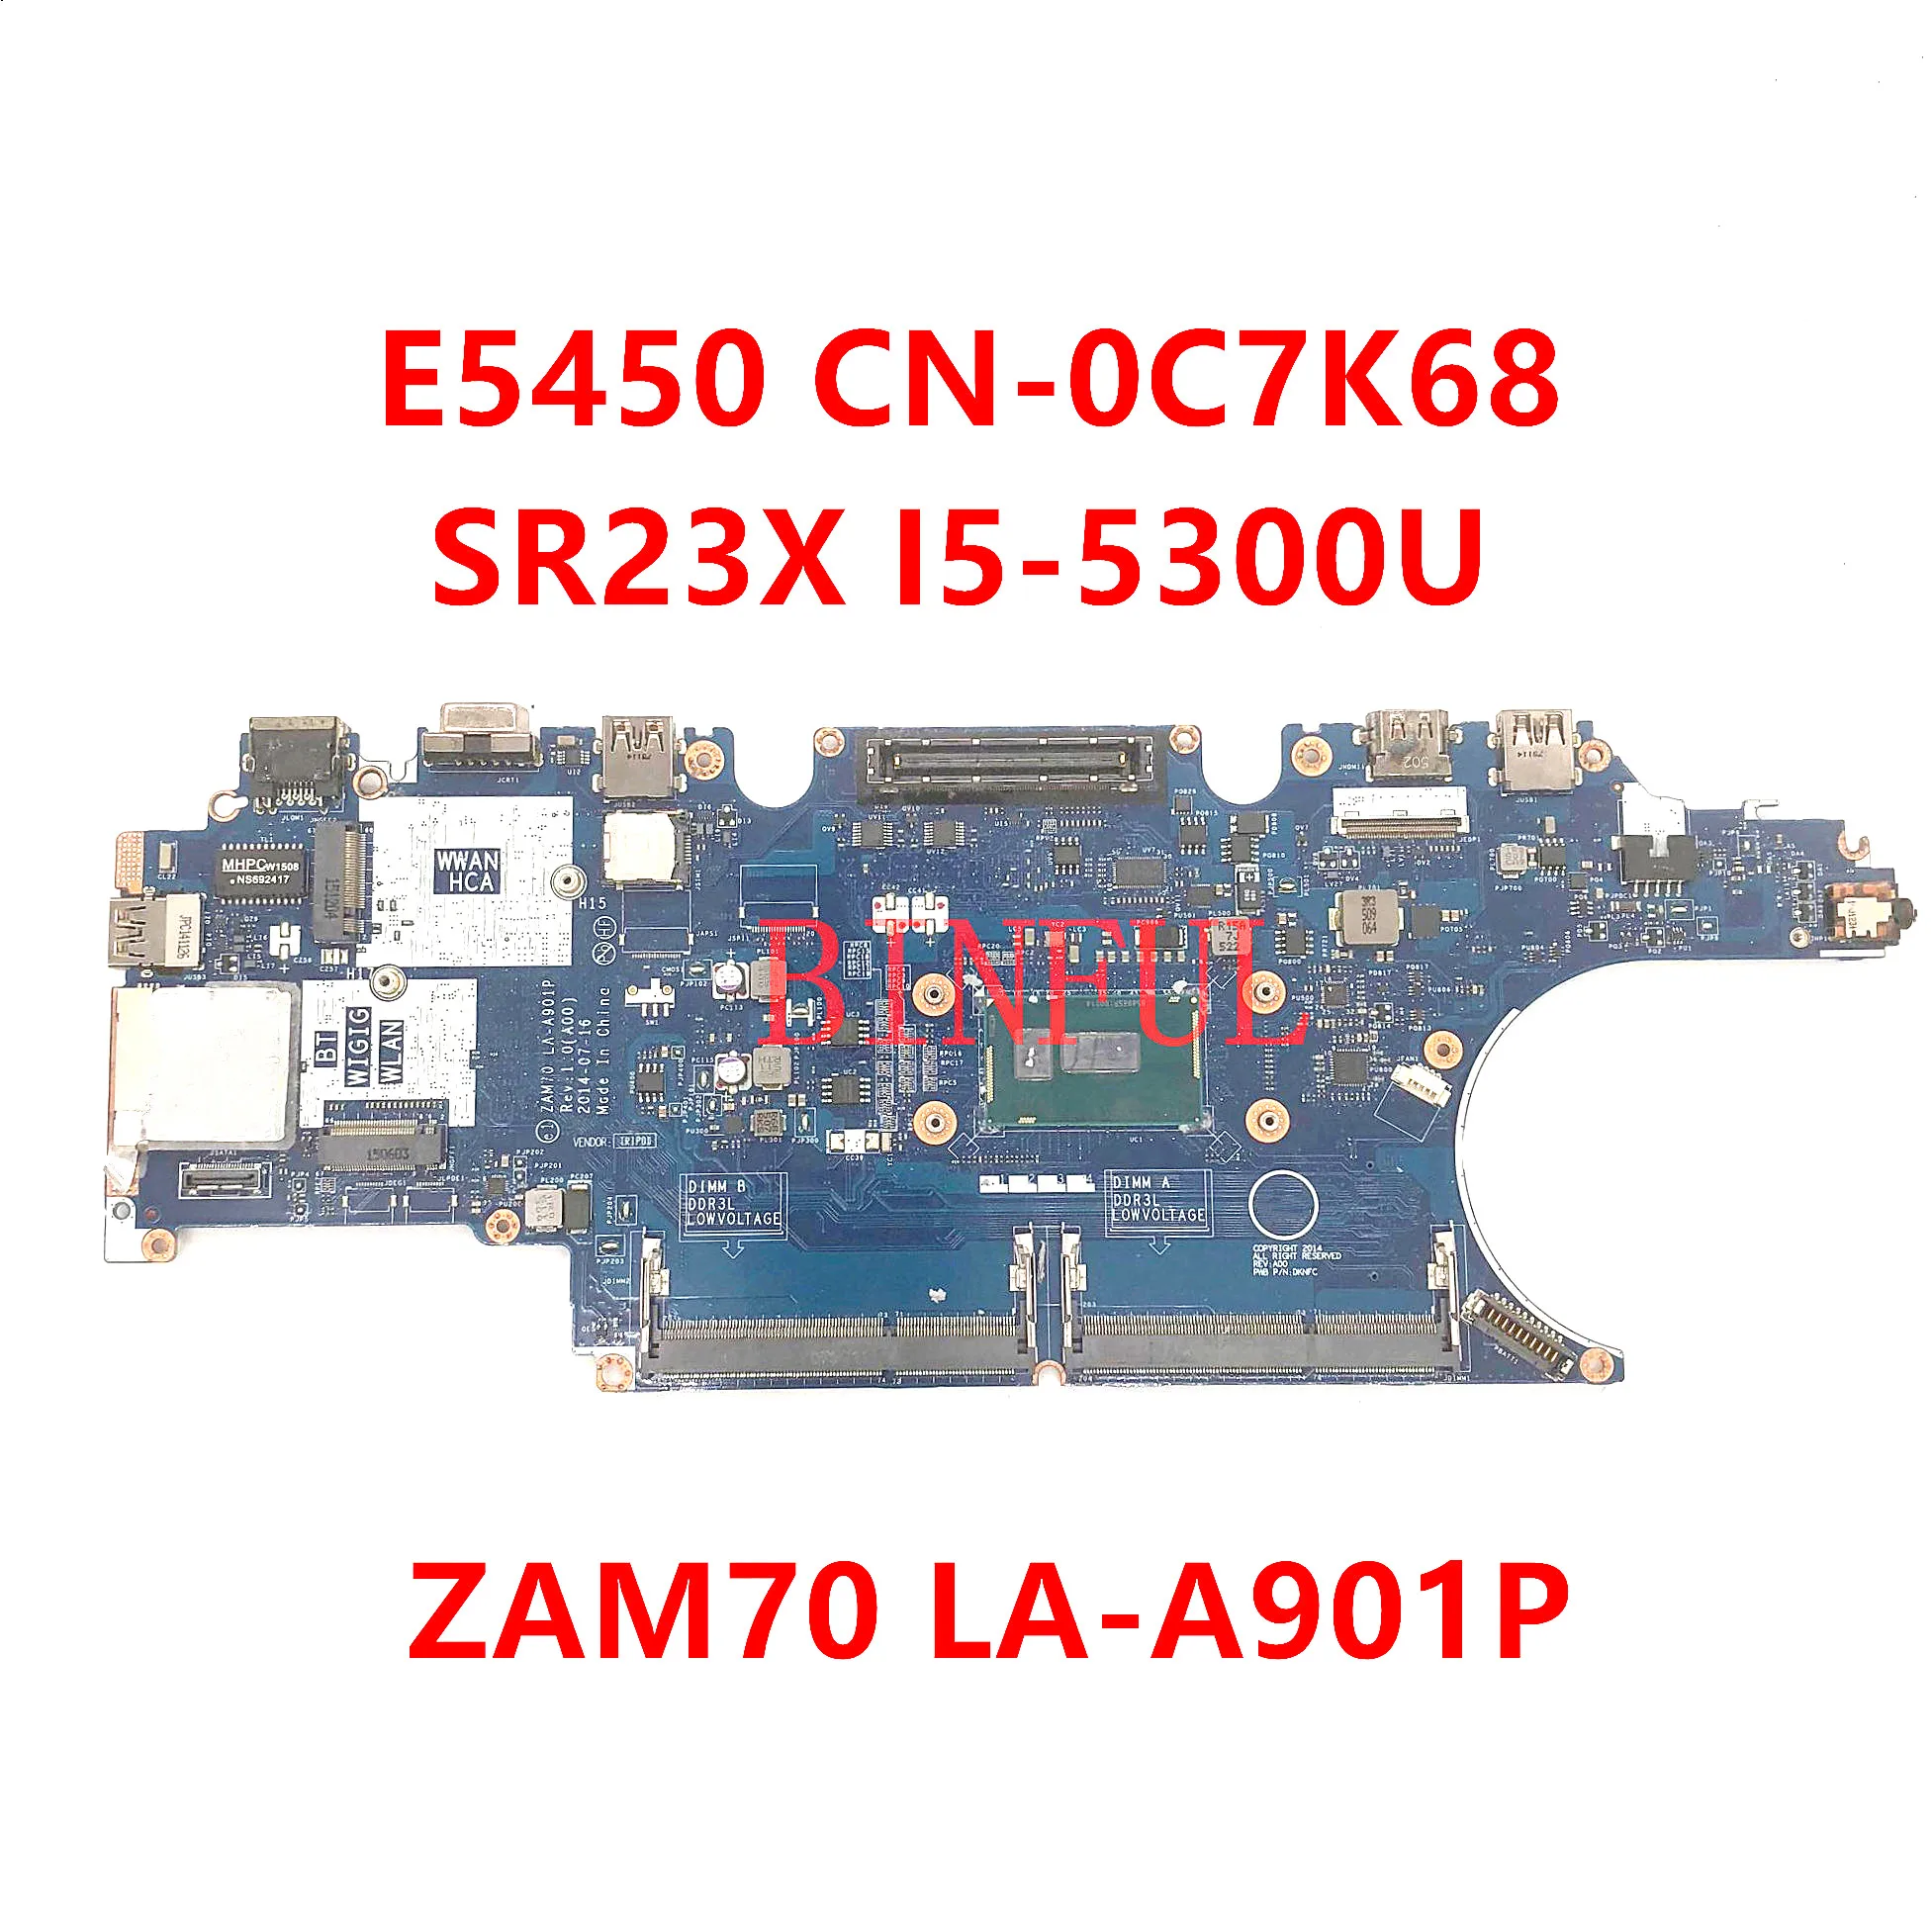 Mainboard For DELL Latitude E5450 Laptop Motherboar CN-0C7K68 0C7K68 C7K68 ZAM70 LA-A901P With SR23X I5-5300U CPU 100% Tested OK